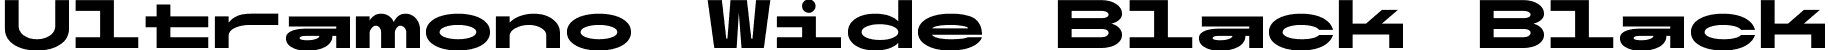 Ultramono Wide Black Black font | UltramonoWide-Black.ttf